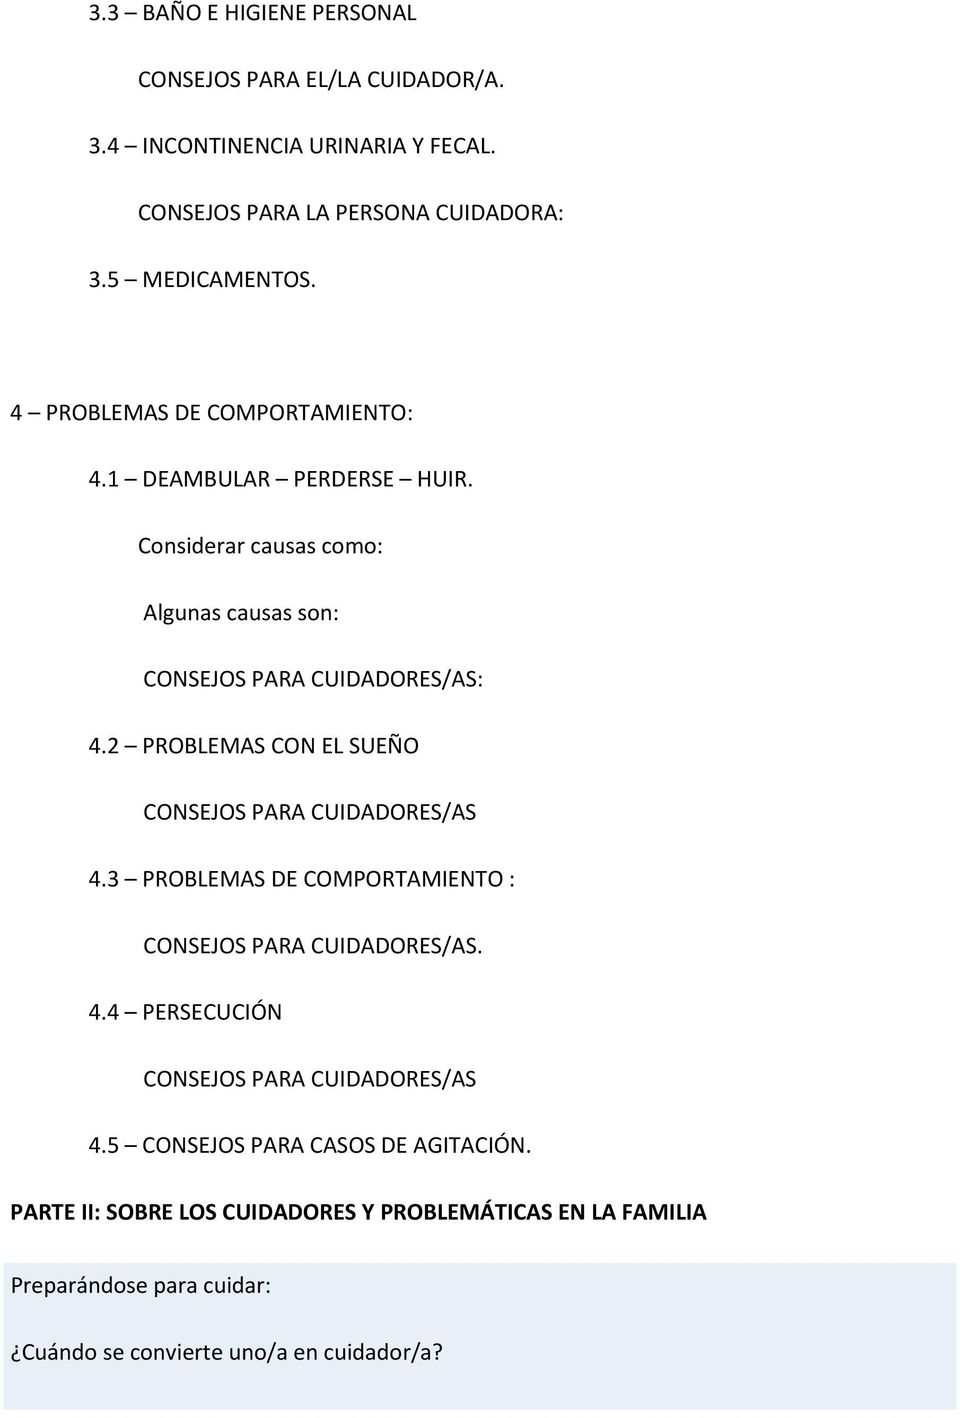 2 PROBLEMAS CON EL SUEÑO CONSEJOS PARA CUIDADORES/AS 4.3 PROBLEMAS DE COMPORTAMIENTO : CONSEJOS PARA CUIDADORES/AS. 4.4 PERSECUCIÓN CONSEJOS PARA CUIDADORES/AS 4.